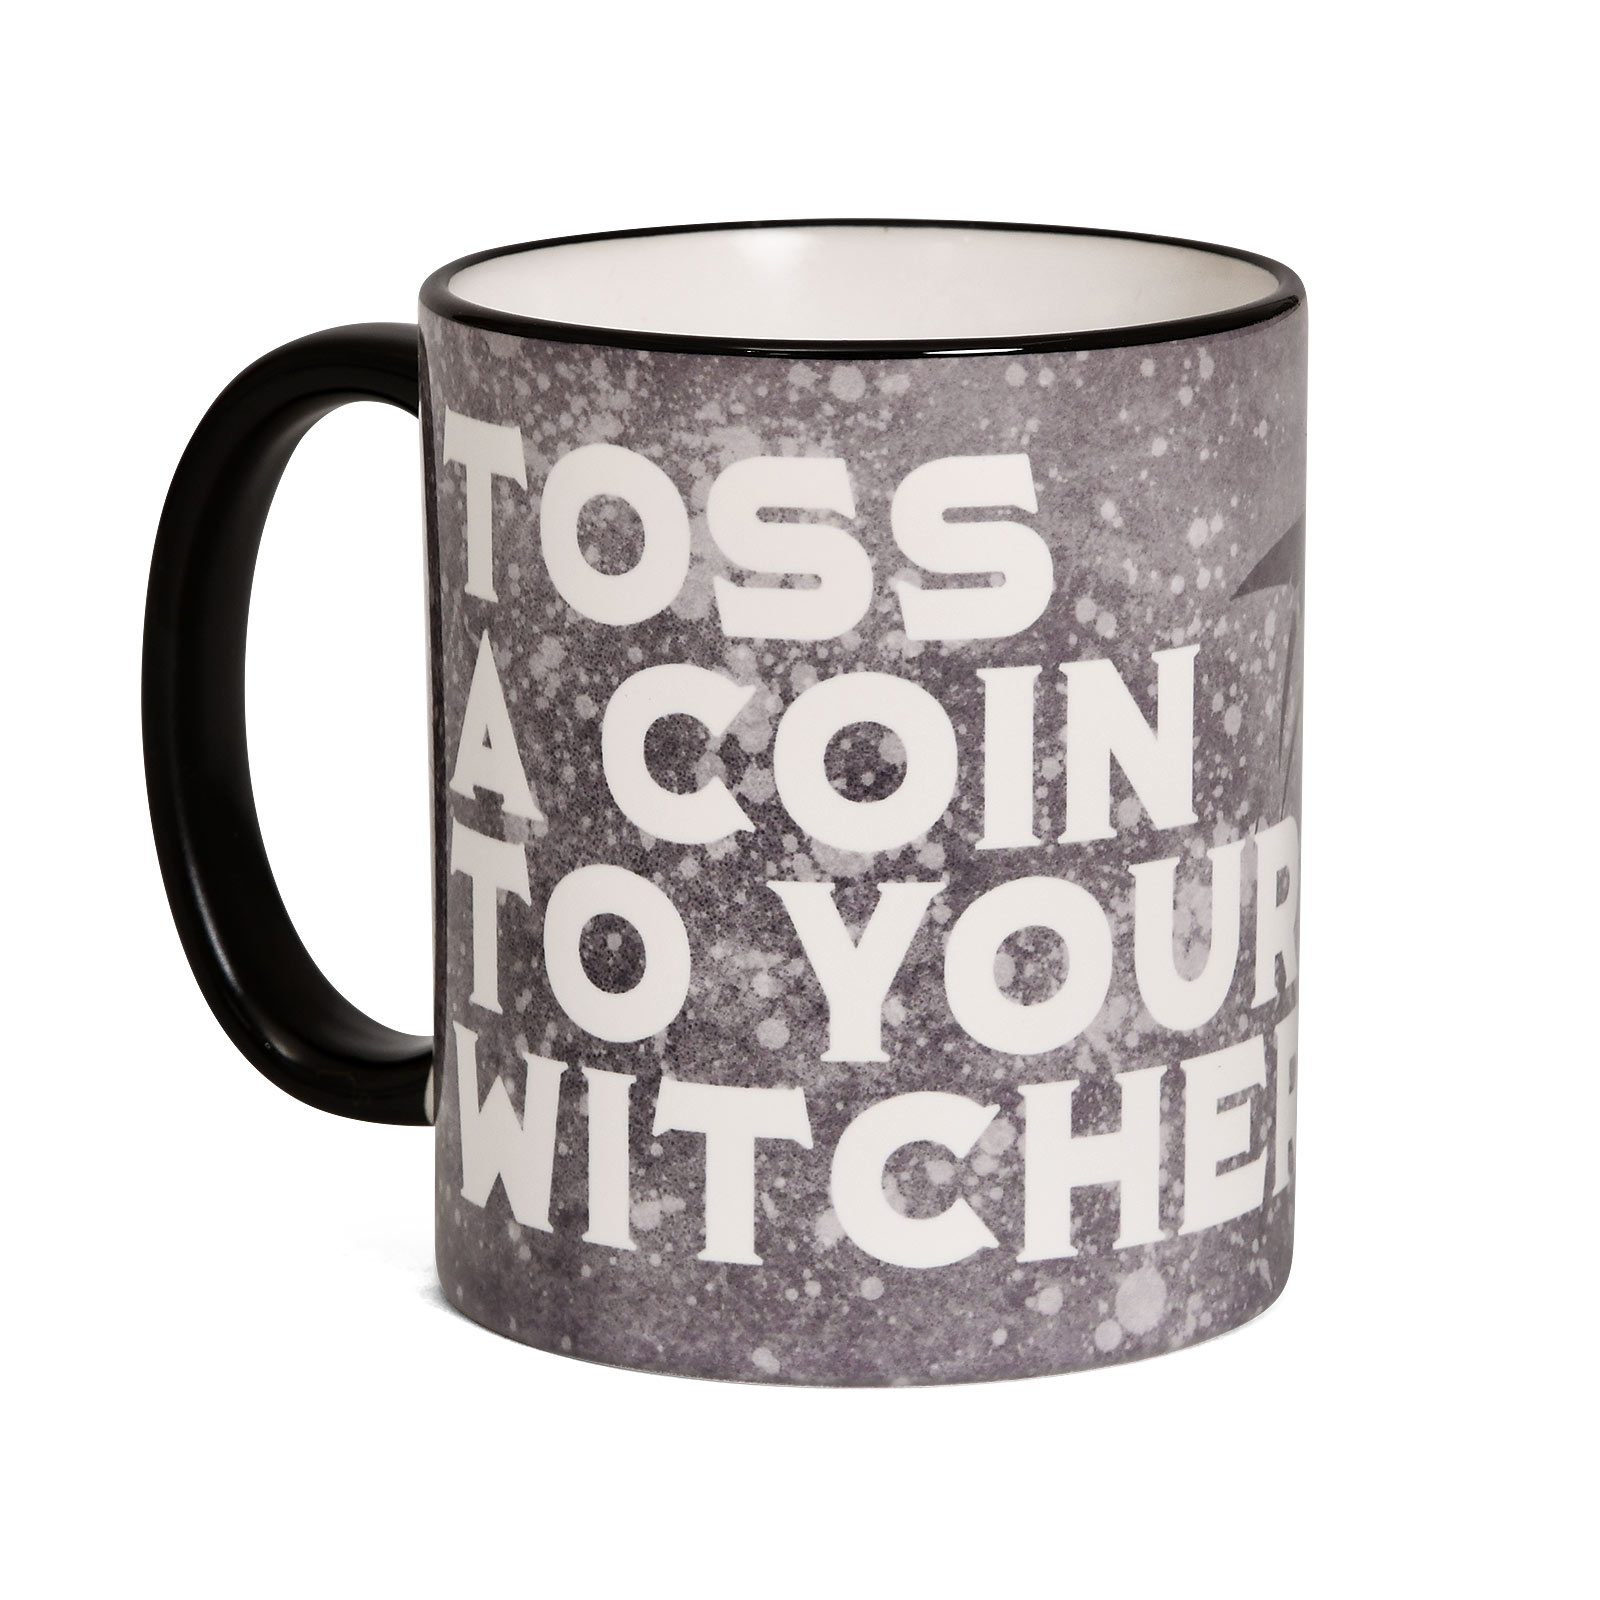 Toss a Coin Tasse für Witcher Fans